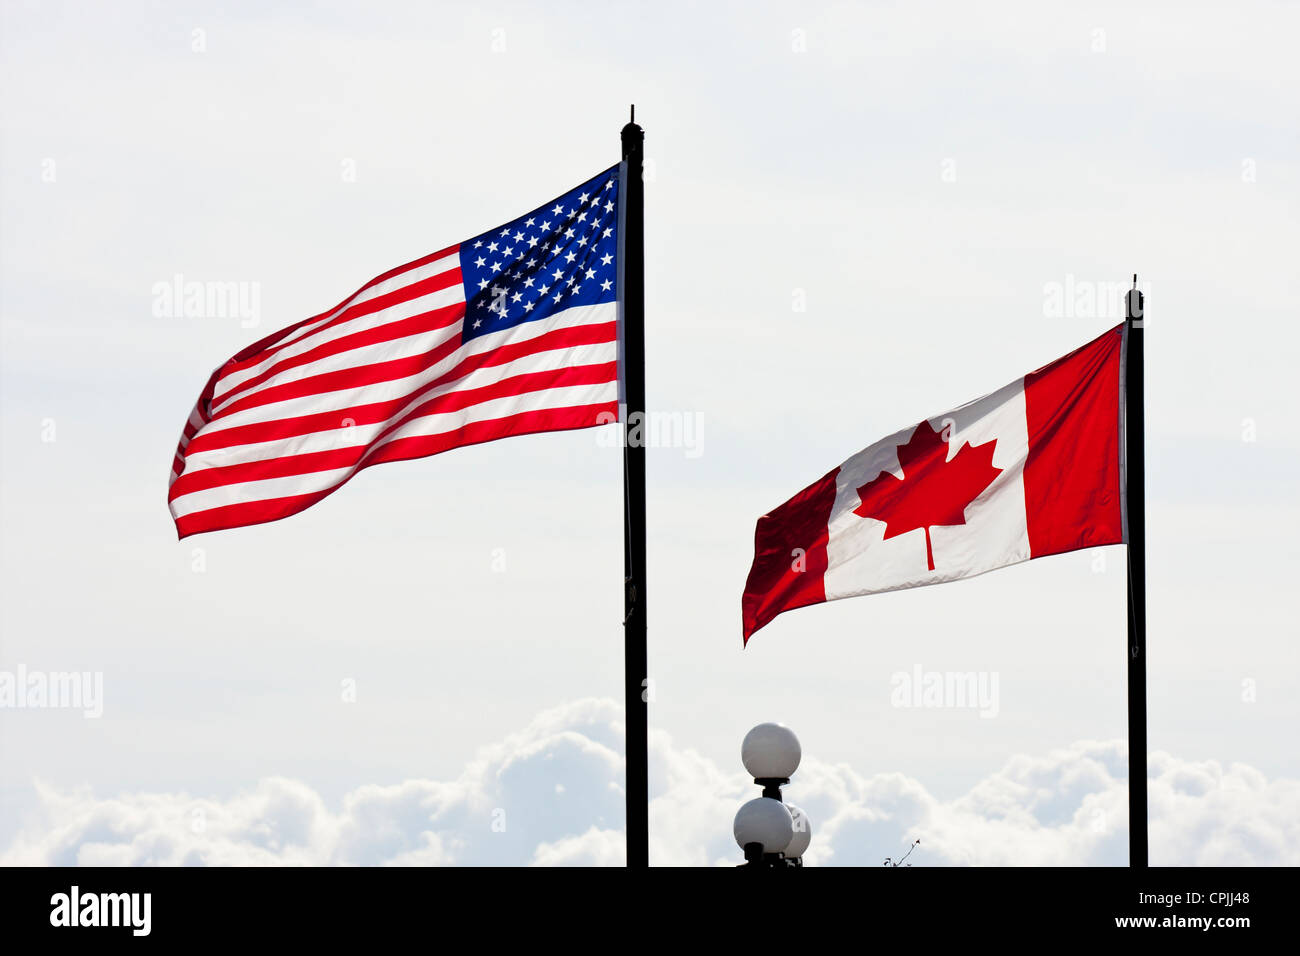 Noi a stelle e strisce e il canadese maple leaf flag soffia nella brezza -Victoria, Isola di Vancouver, British Columbia, Canada. Foto Stock